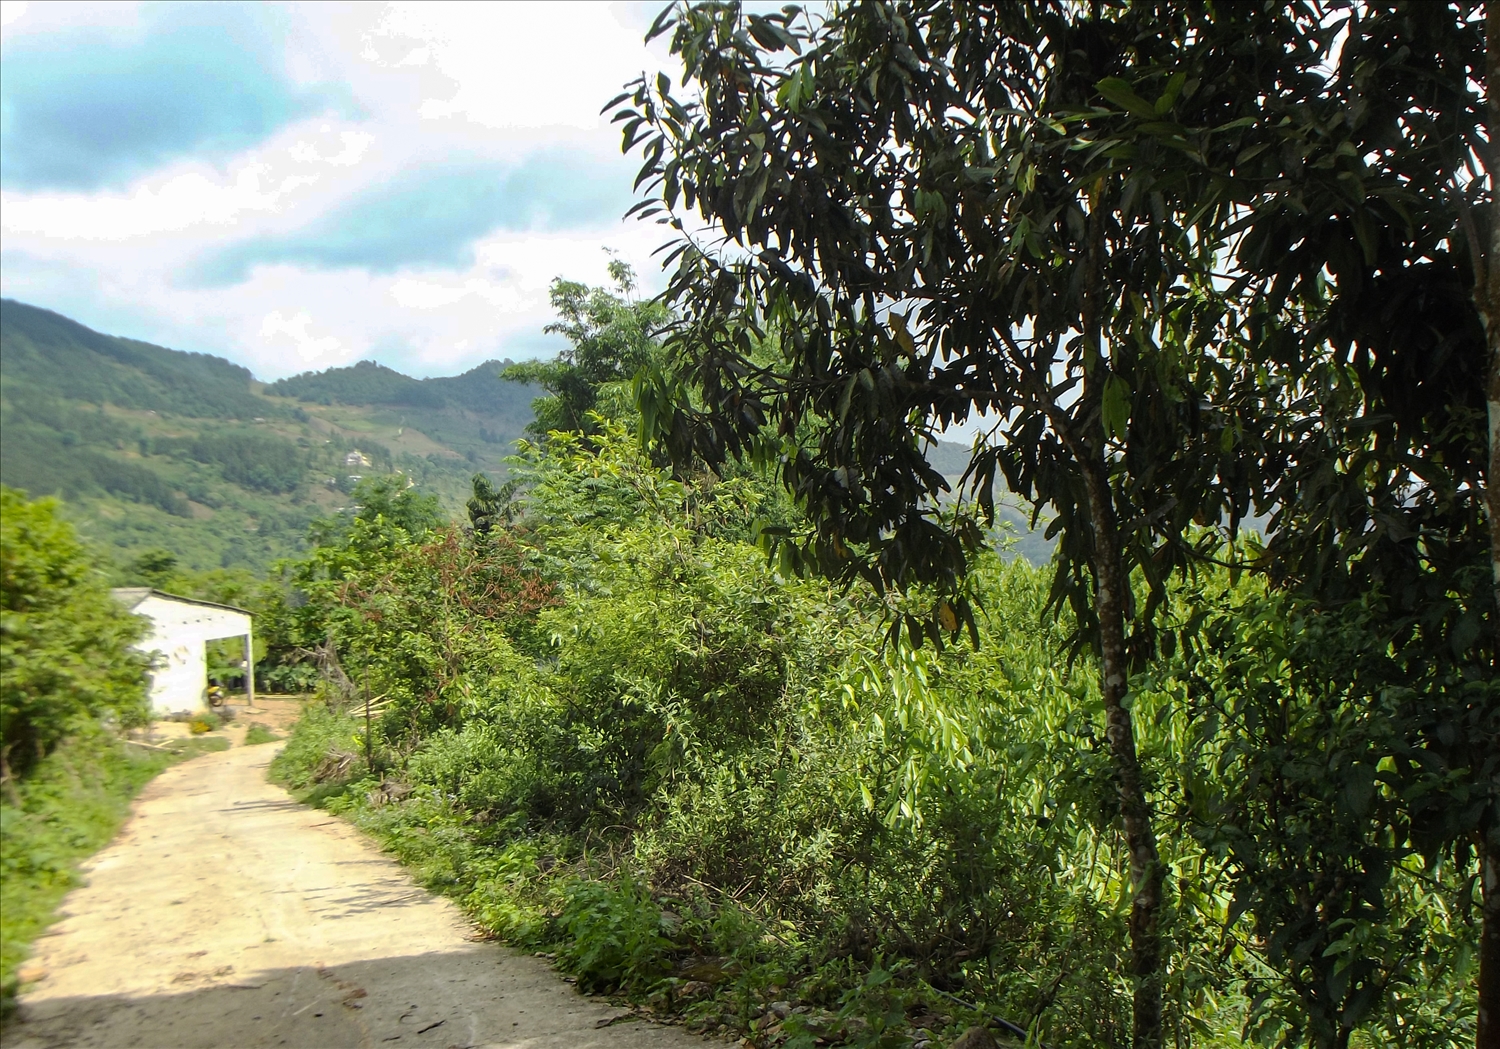 Dọc 2 bên đường các tuyến đường vào các thôn bản xã nông thôn mới Nậm Mòn đã rợp bóng nhờ trồng cây quế